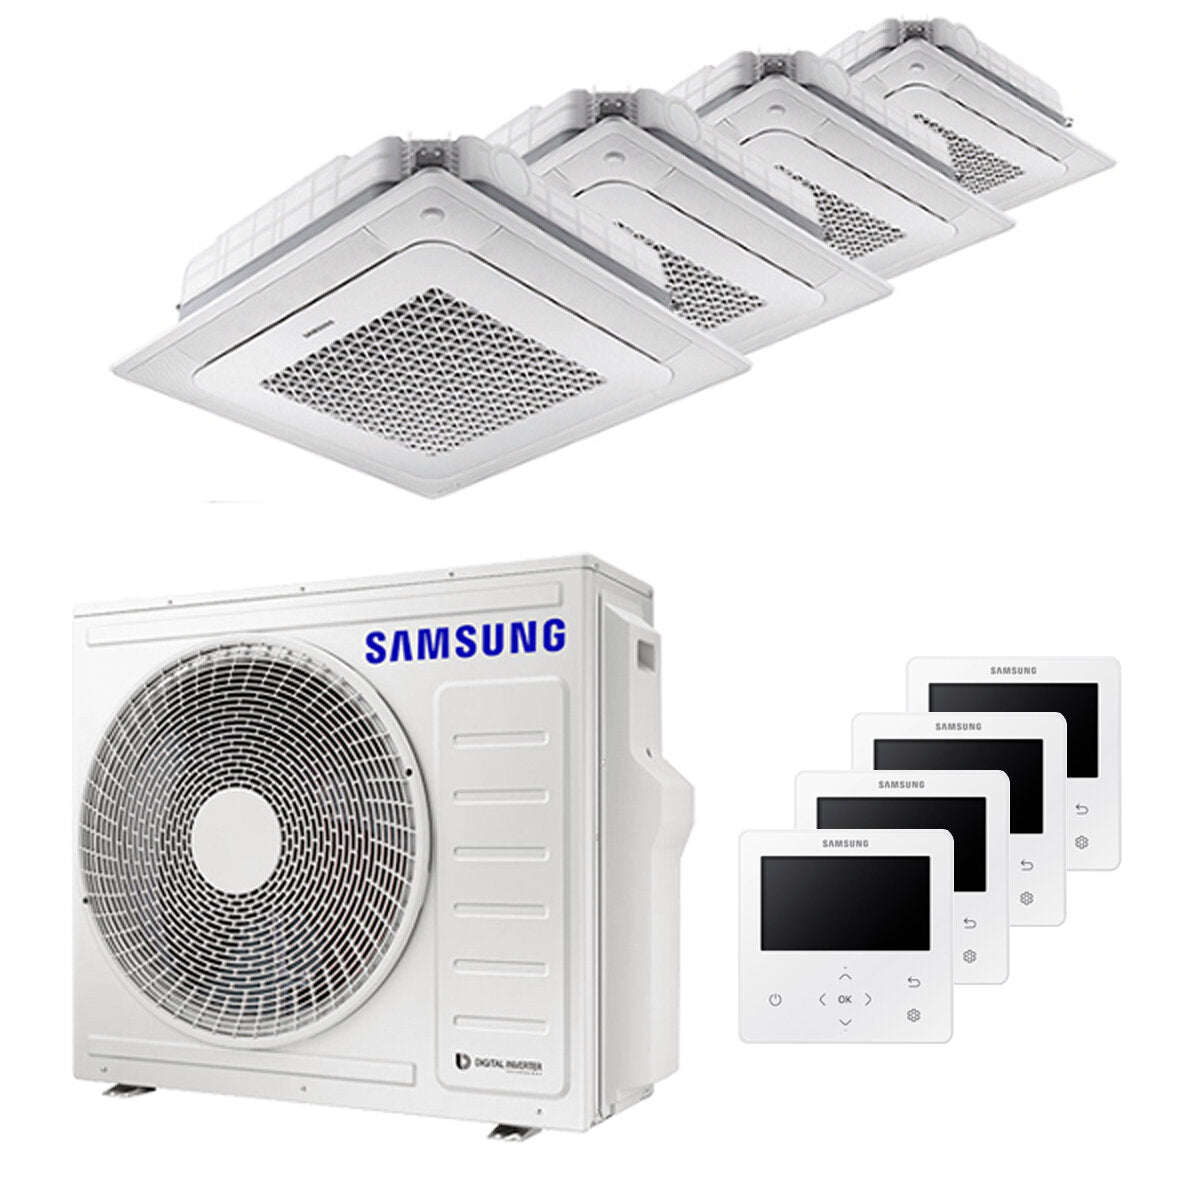 Samsung Climatiseur Windfree 4 voies split carré 9000 + 9000 + 9000 + 9000 BTU inverter A++ unité extérieure 8,0 kW